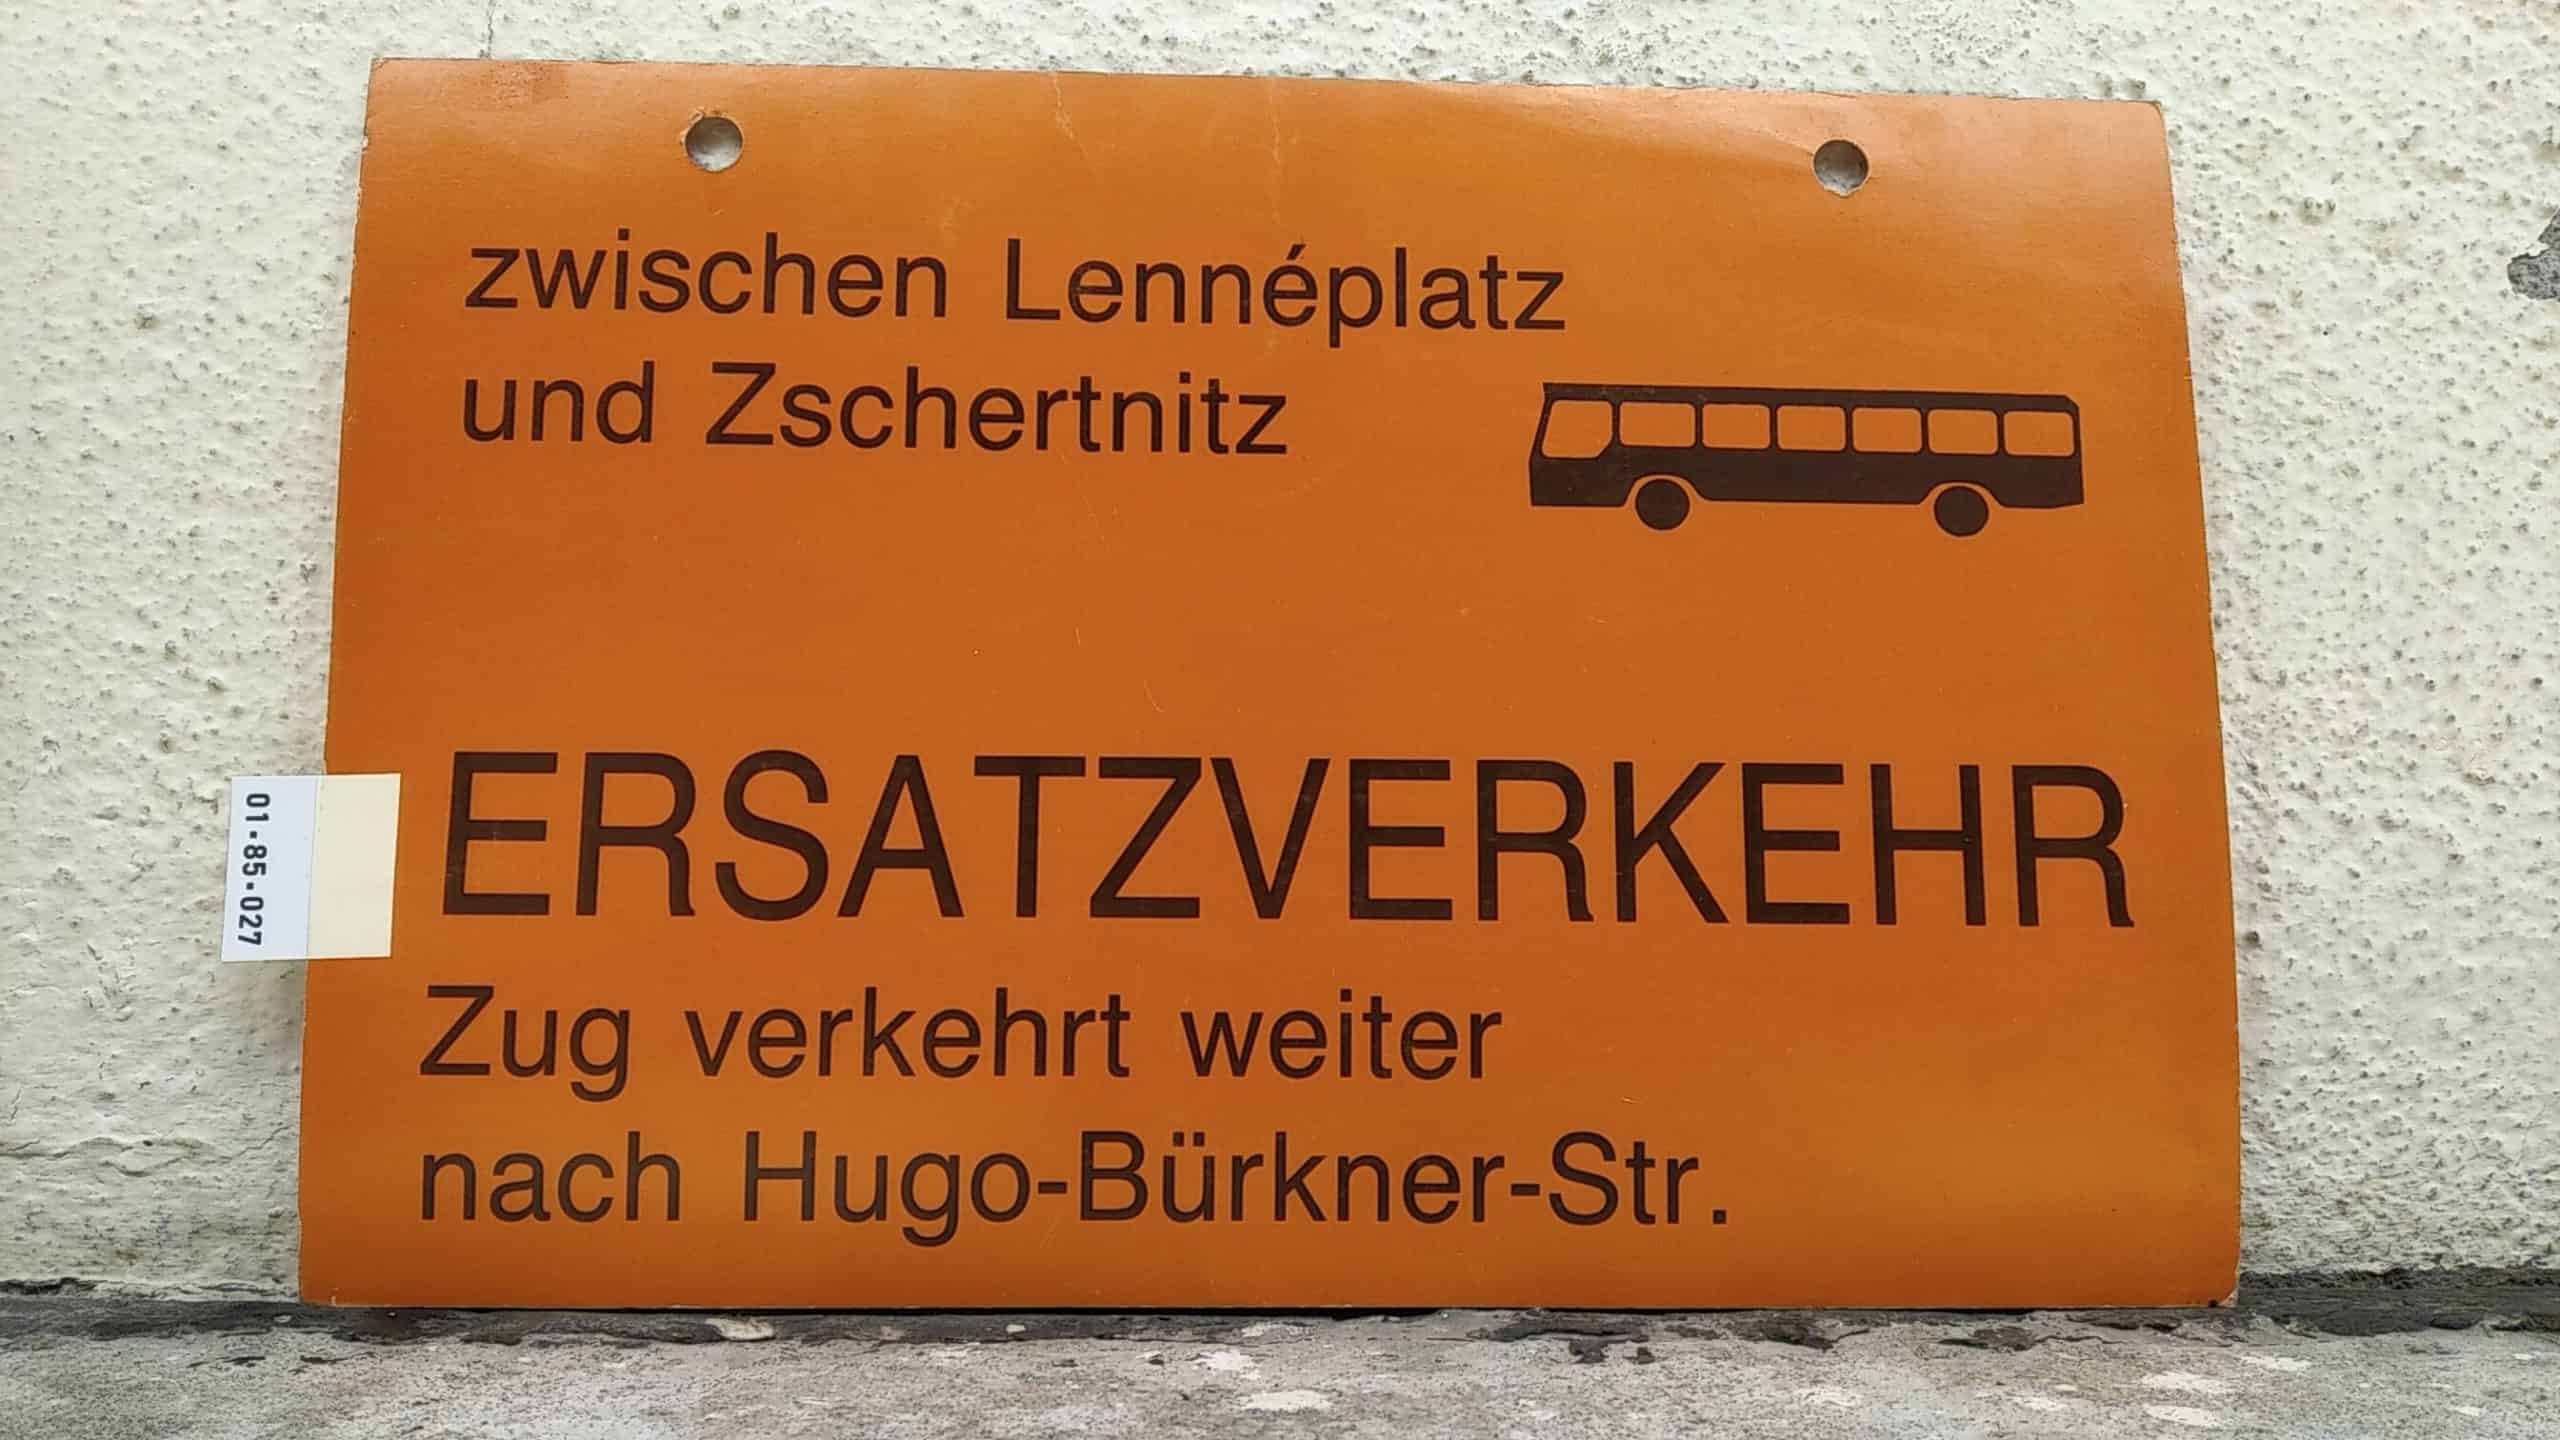 Ein seltenes Straßenbahn-Umleitungsschild aus Dresden: zwischen Lennéplatz und Zschertnitz [Bus neu] ERSATZVERKEHR Zug verkehrt weiter nach Hugo-Bürkner-Str.